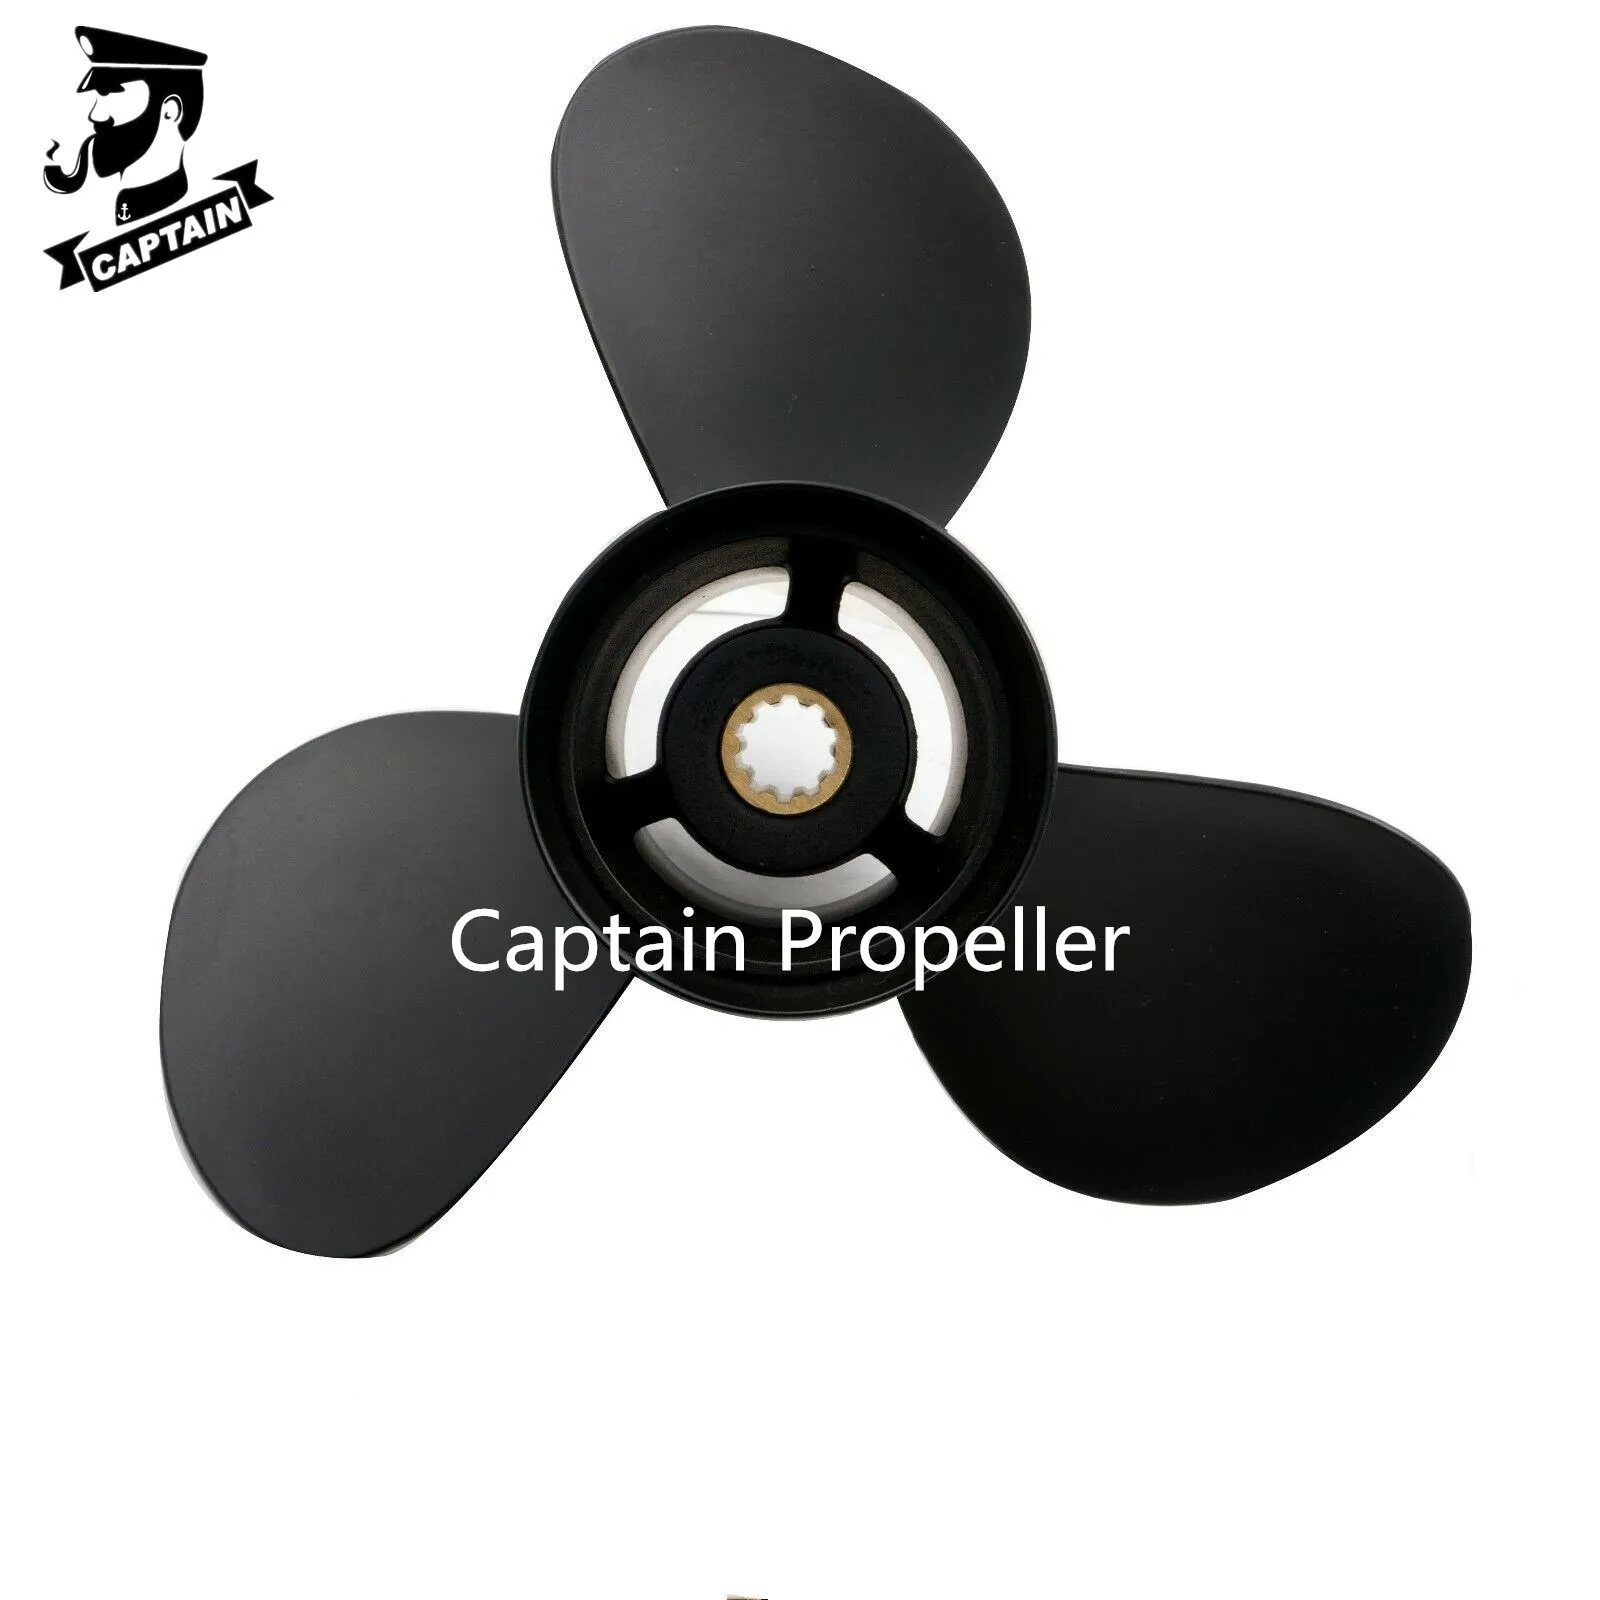 Captain Propeller-motor fueraborda Tohatsu, 10,25x14, MFS25B, MFS30B, 25HP, 30HP, 1985-2001, 25HP, 4 tiempos, 2002-más reciente